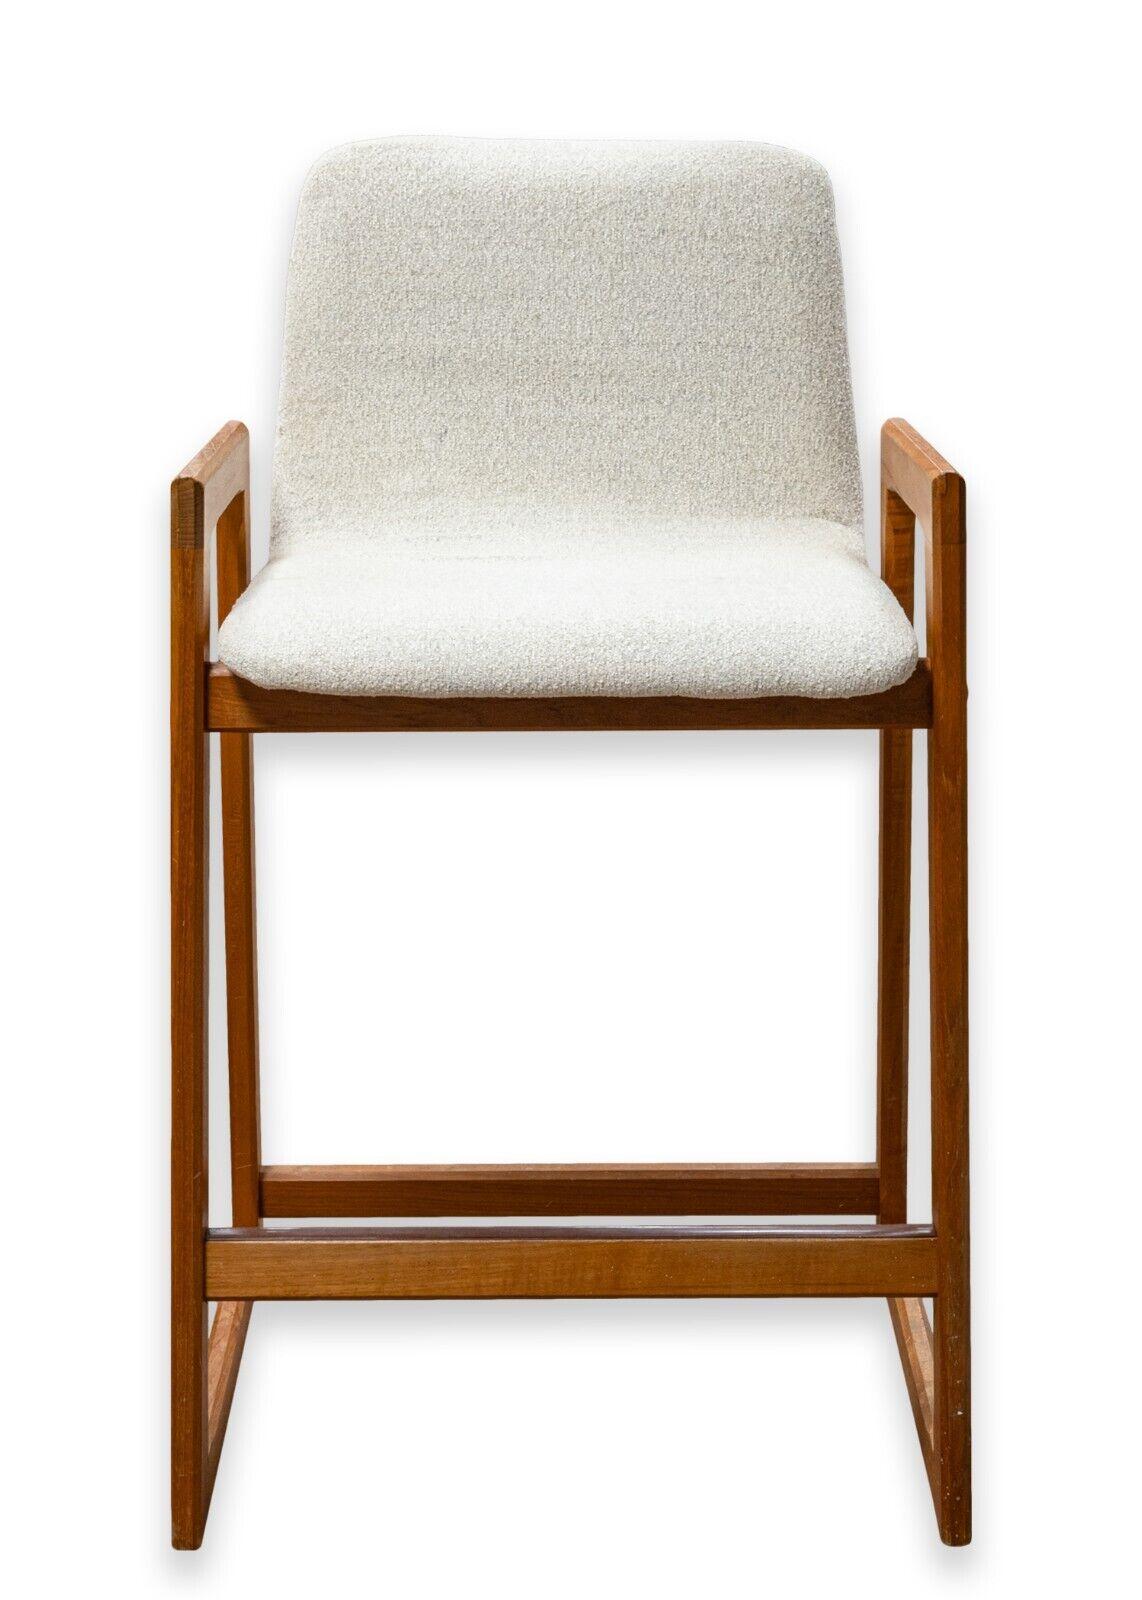 Paire de tabourets de bar danois vintage du milieu du siècle dernier. Magnifique paire de tabourets de bar danois avec une superbe structure en teck et un revêtement en tissu blanc. Ces chaises présentent une silhouette magnifique avec des formes